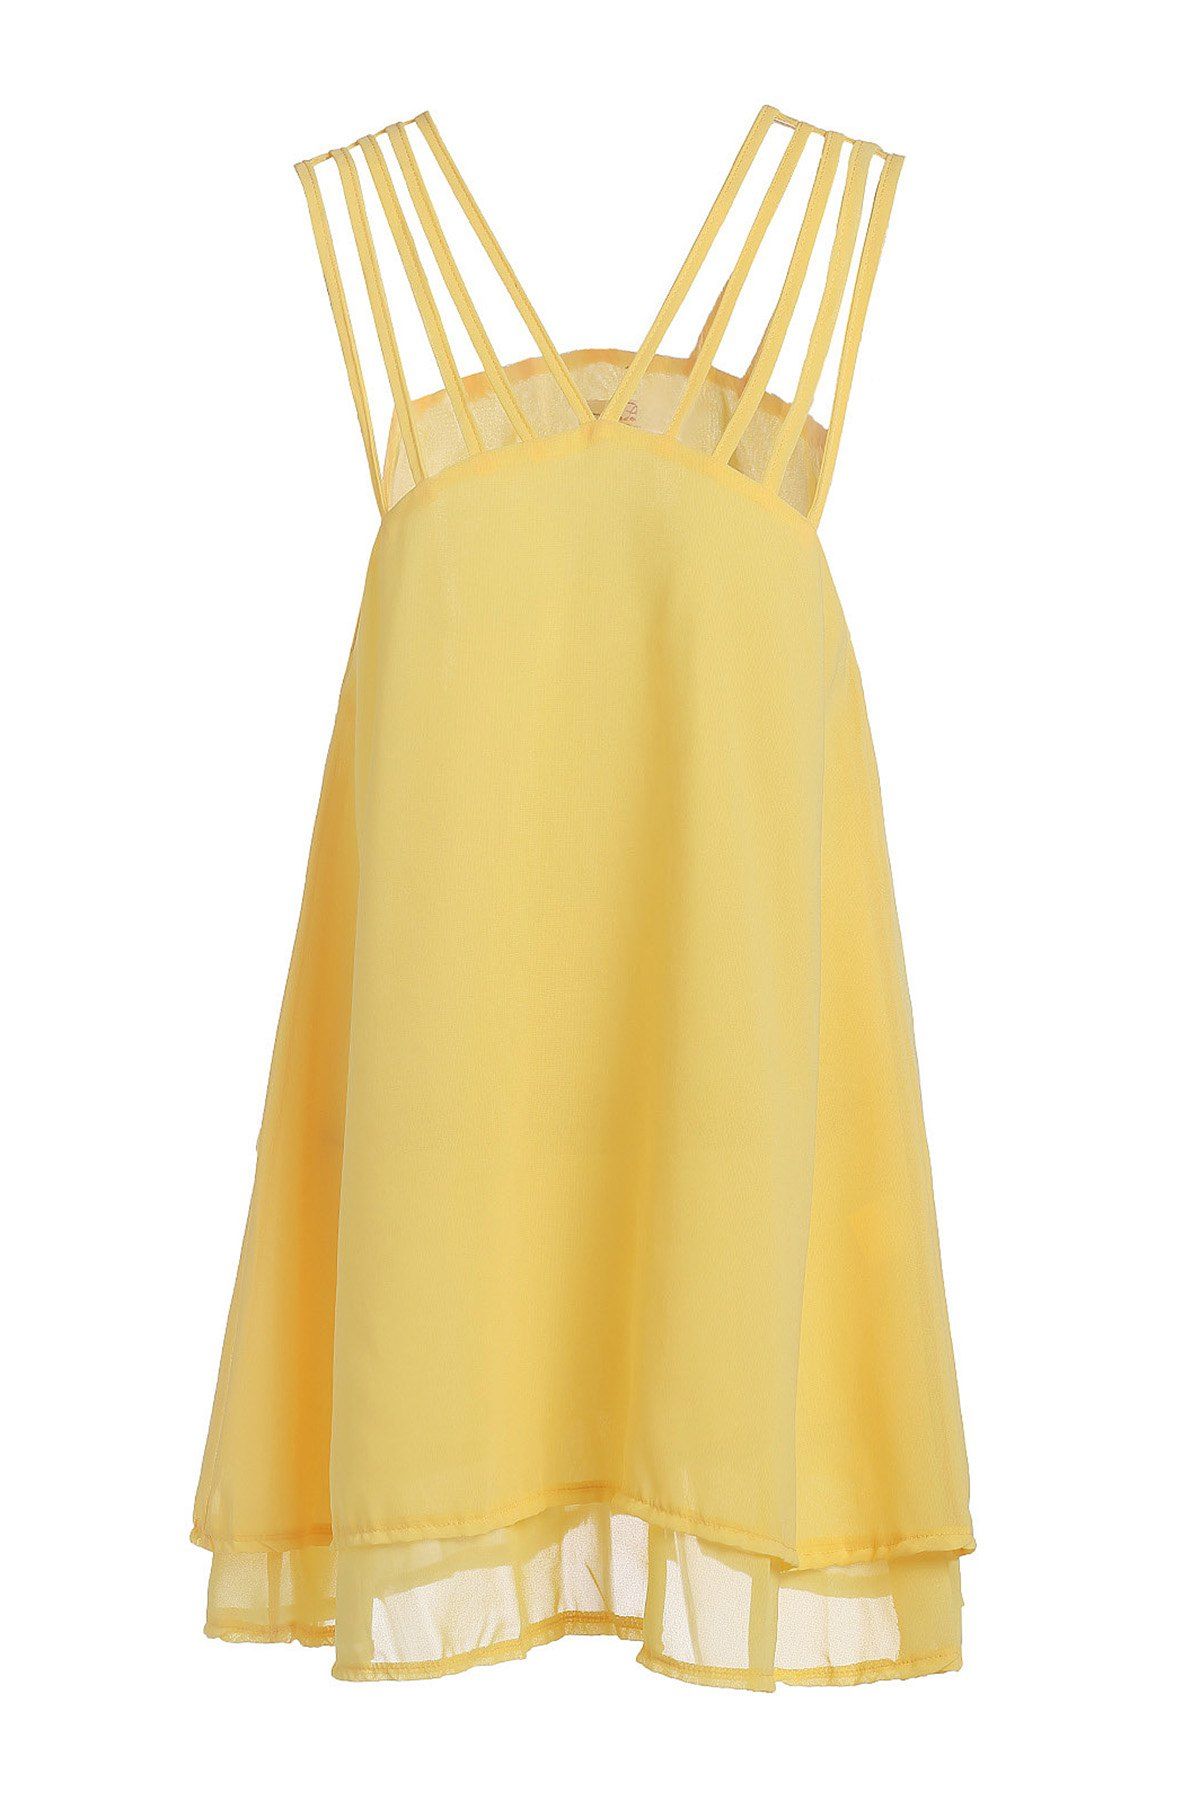 Yellow S Stylish Yellow Spaghetti Strap Ruffle Women's Dress | RoseGal.com